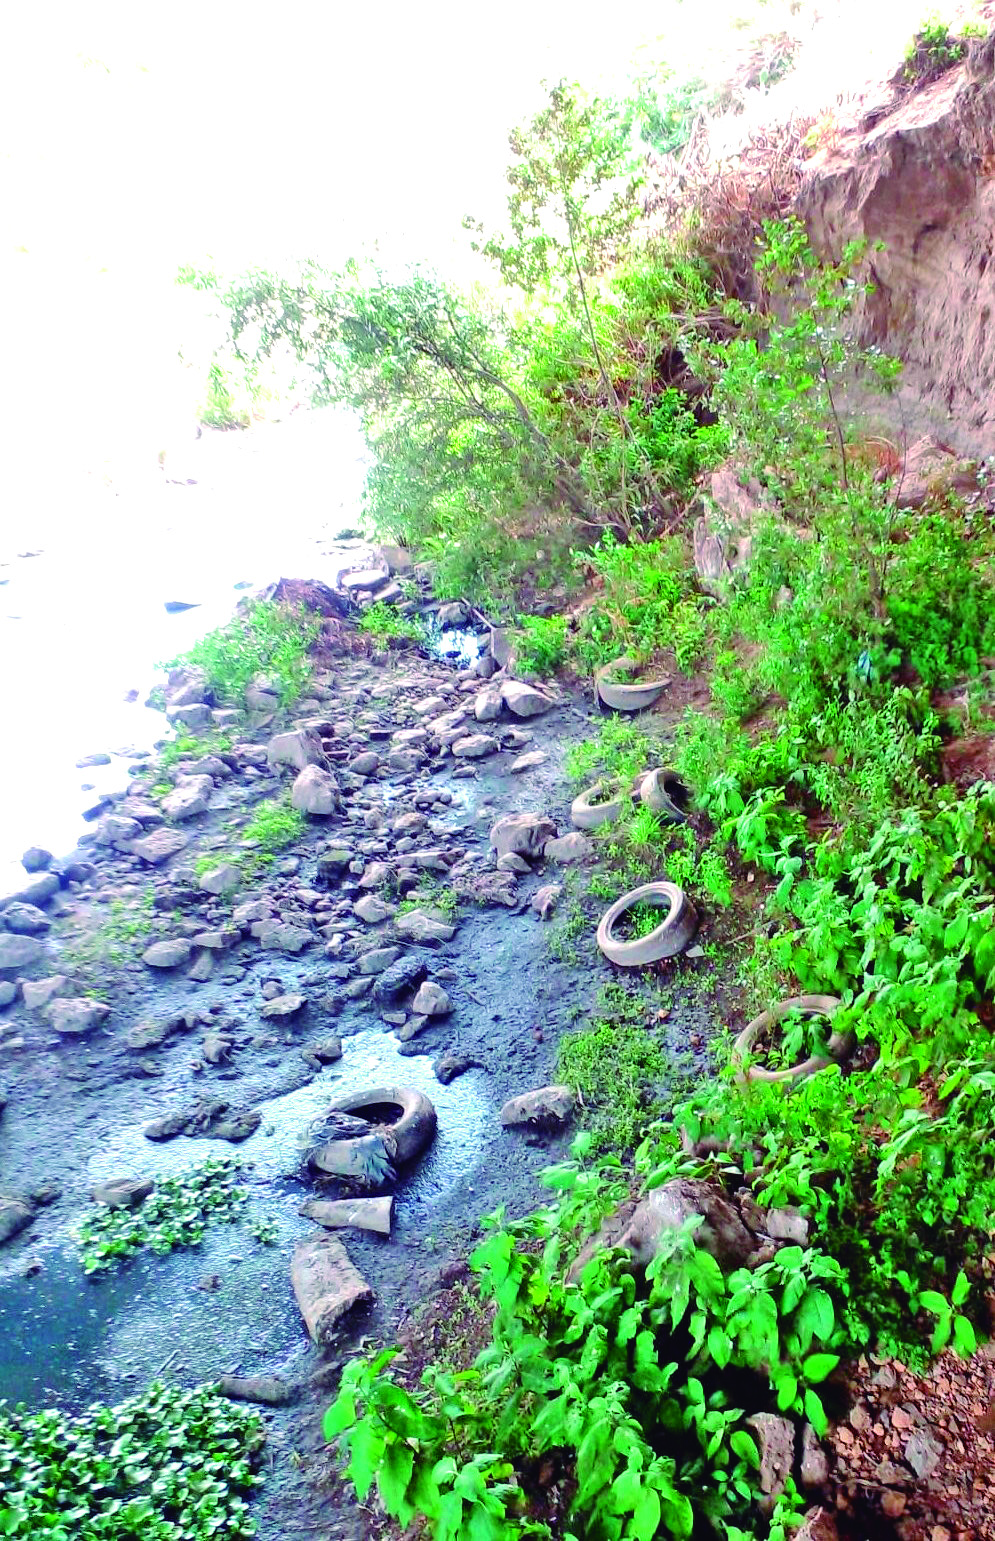 Bordos del río Tulancingo, donde no hay revestimiento, son usados como tiradero de llantas y de todo tipo de basura, generando foco de contaminación